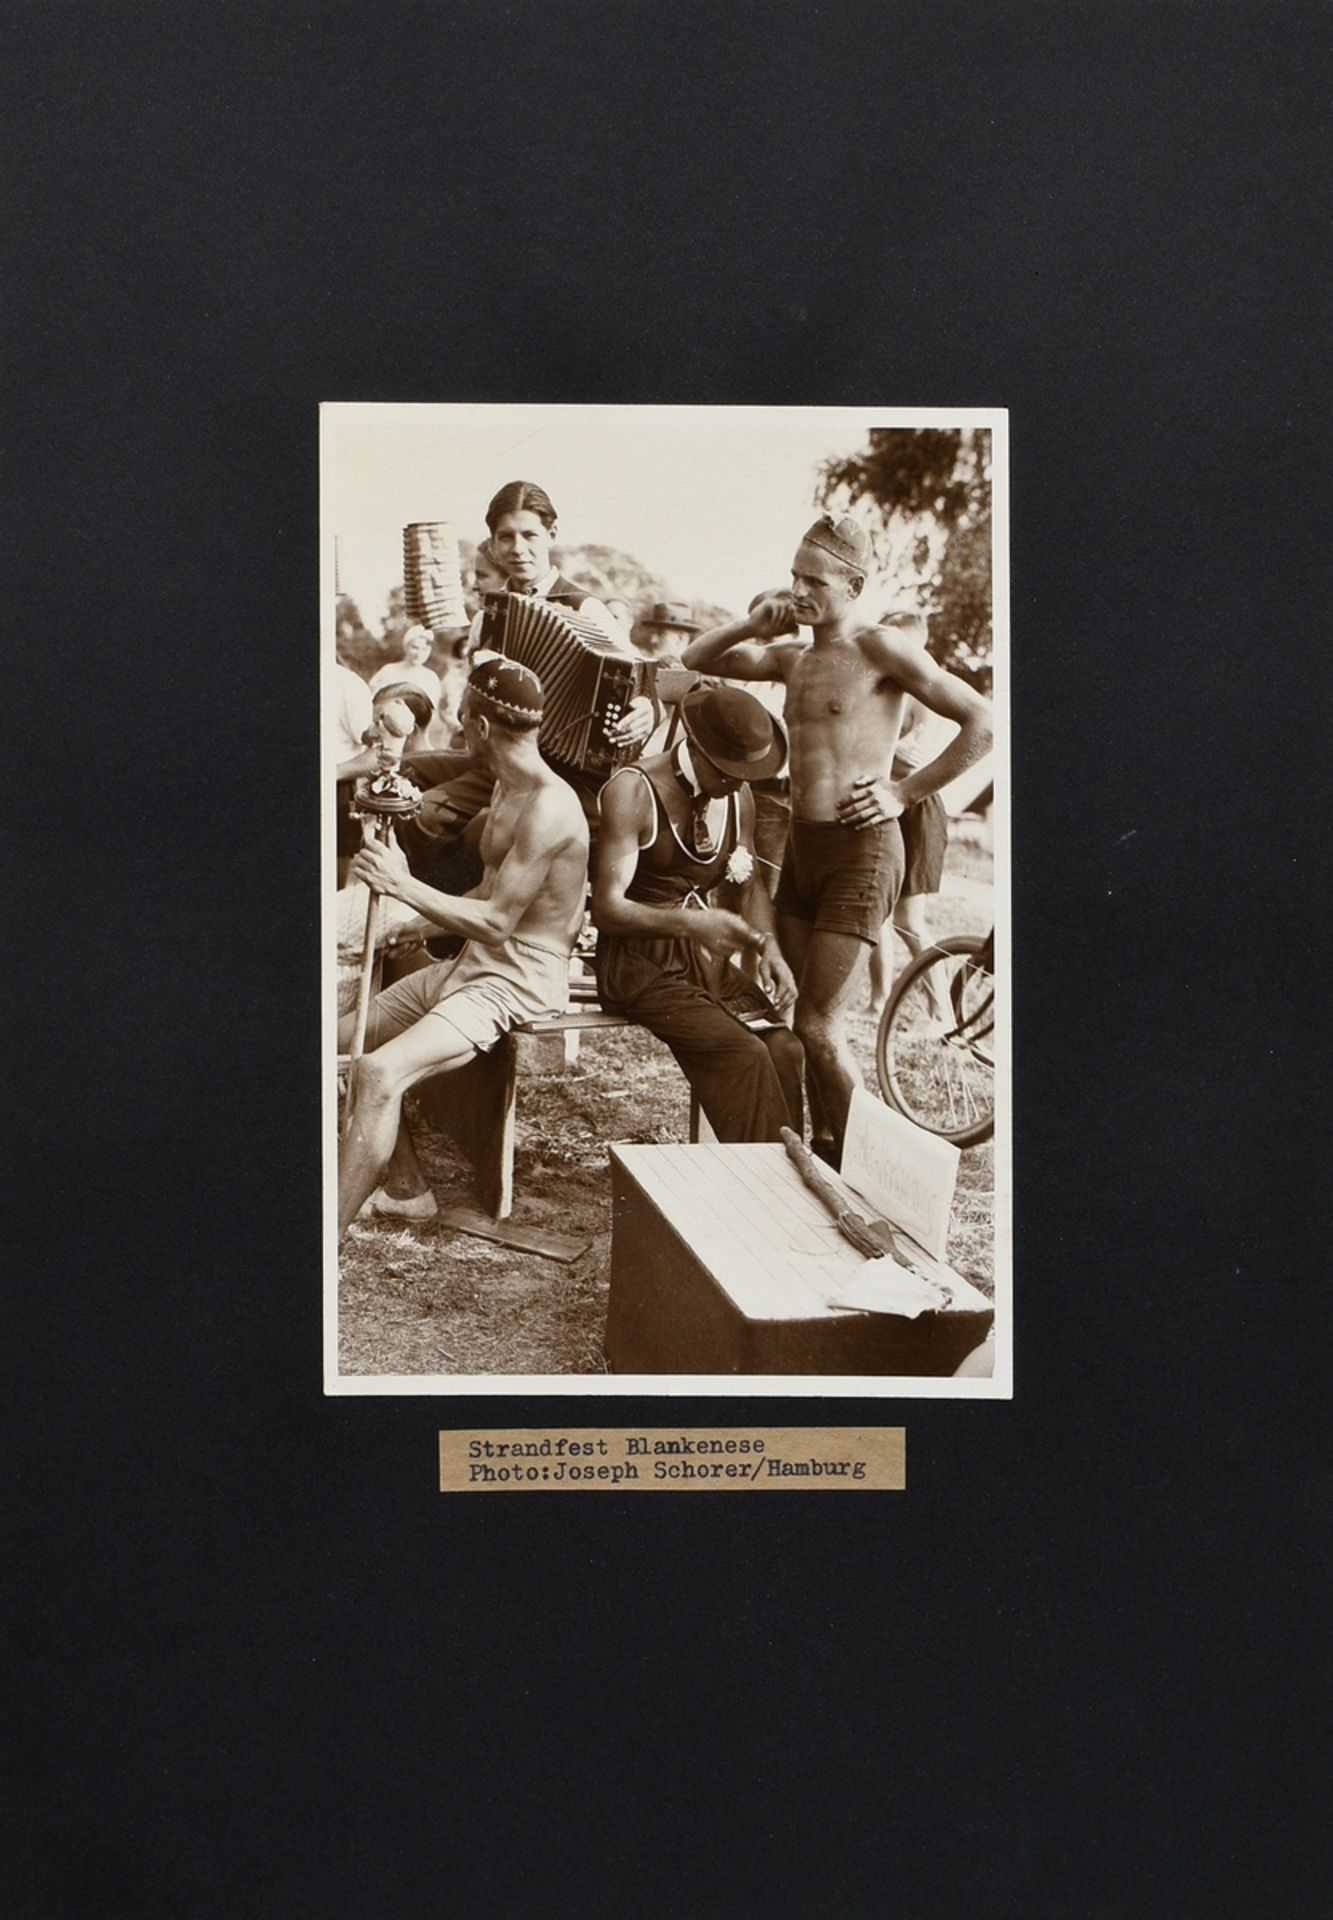 Schorer, Joseph (1894-1946) "Strandfest Blankenese", Fotografie, auf Karton montiert, u. bez., vers - Bild 2 aus 2